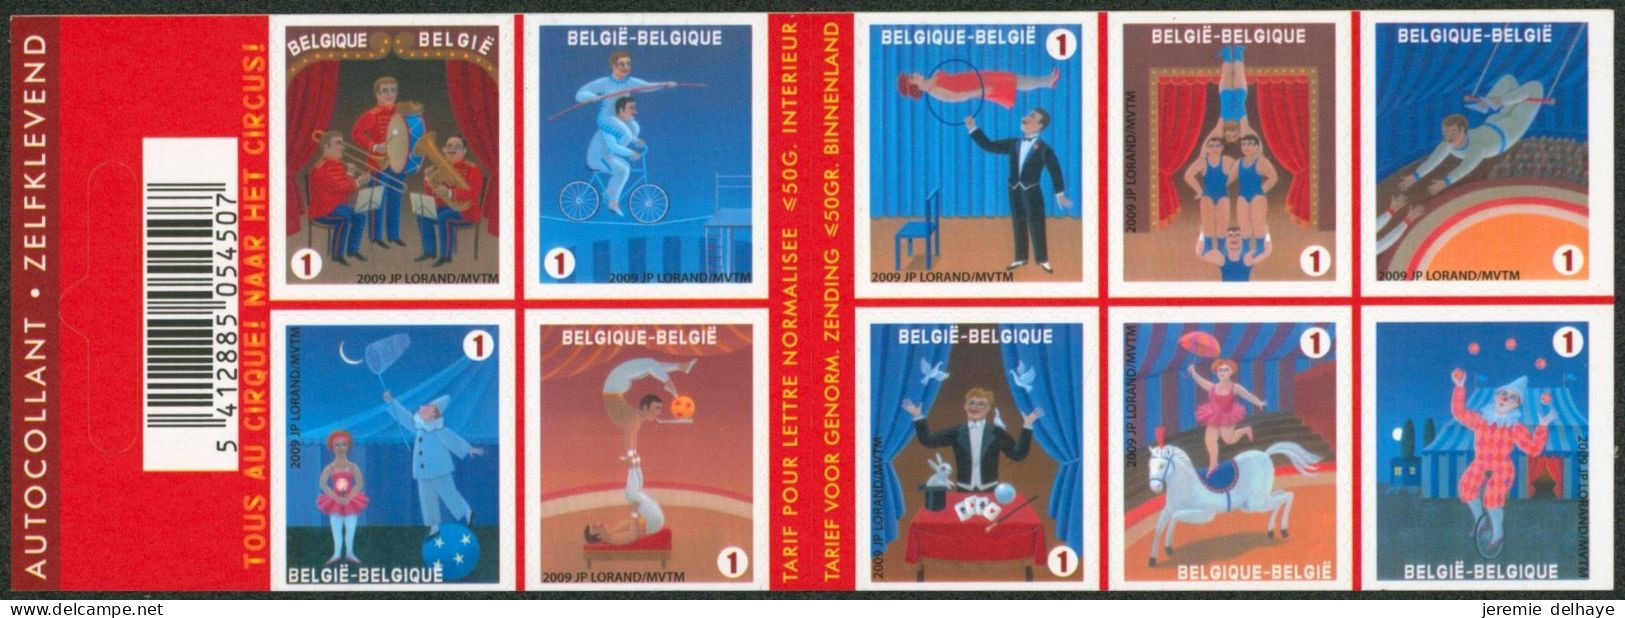 Carnet (2009) - B105** (MNH) Carnet De 10 Timbres Sur Le Cirque / Circus. - 1997-… Validez Permanente [B]